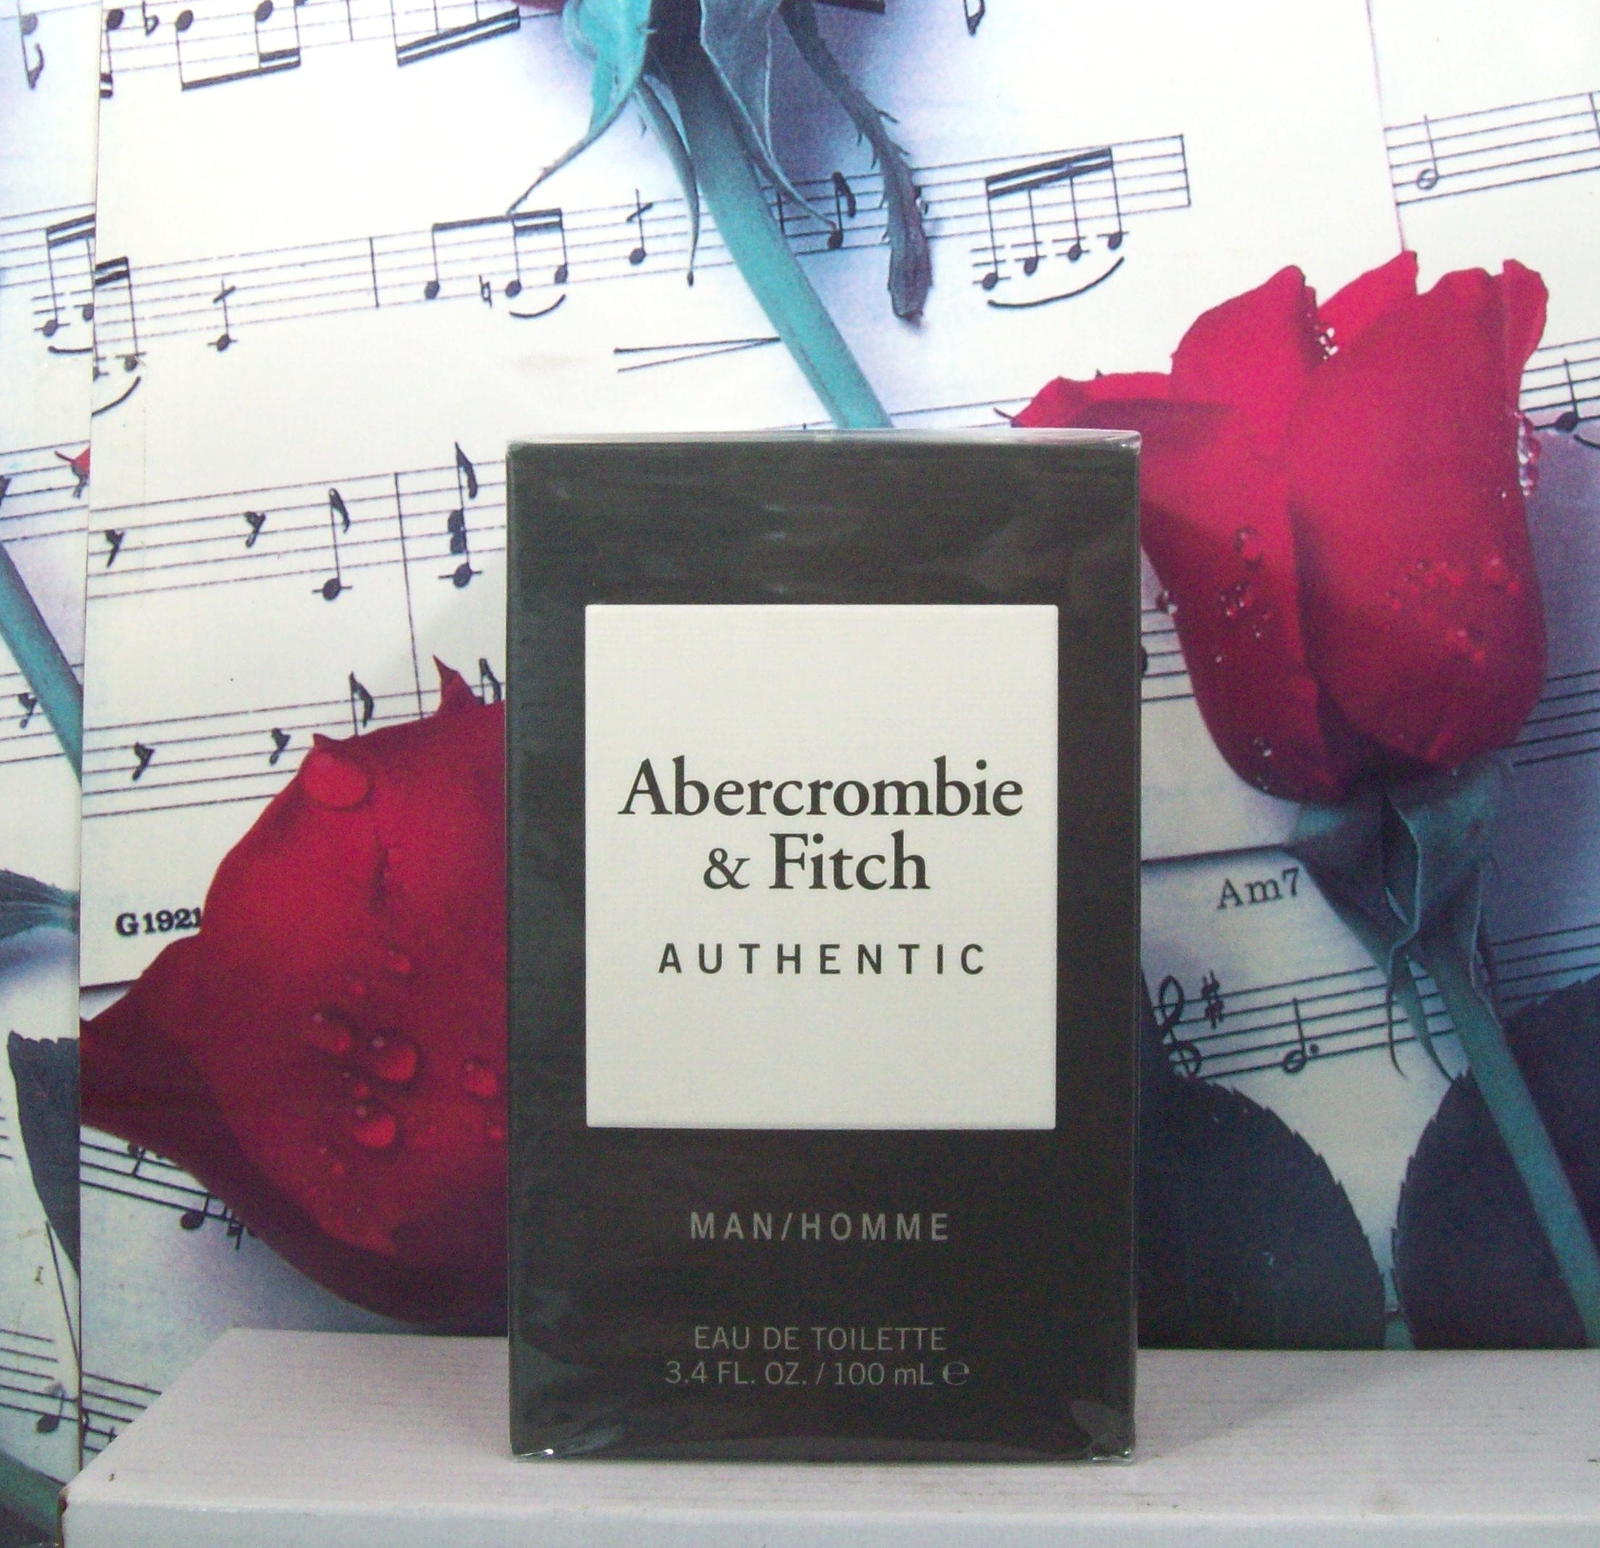 Abercrombie & Fitch Authentic Man 3.4 FL. OZ. EDT Spray - $59.99